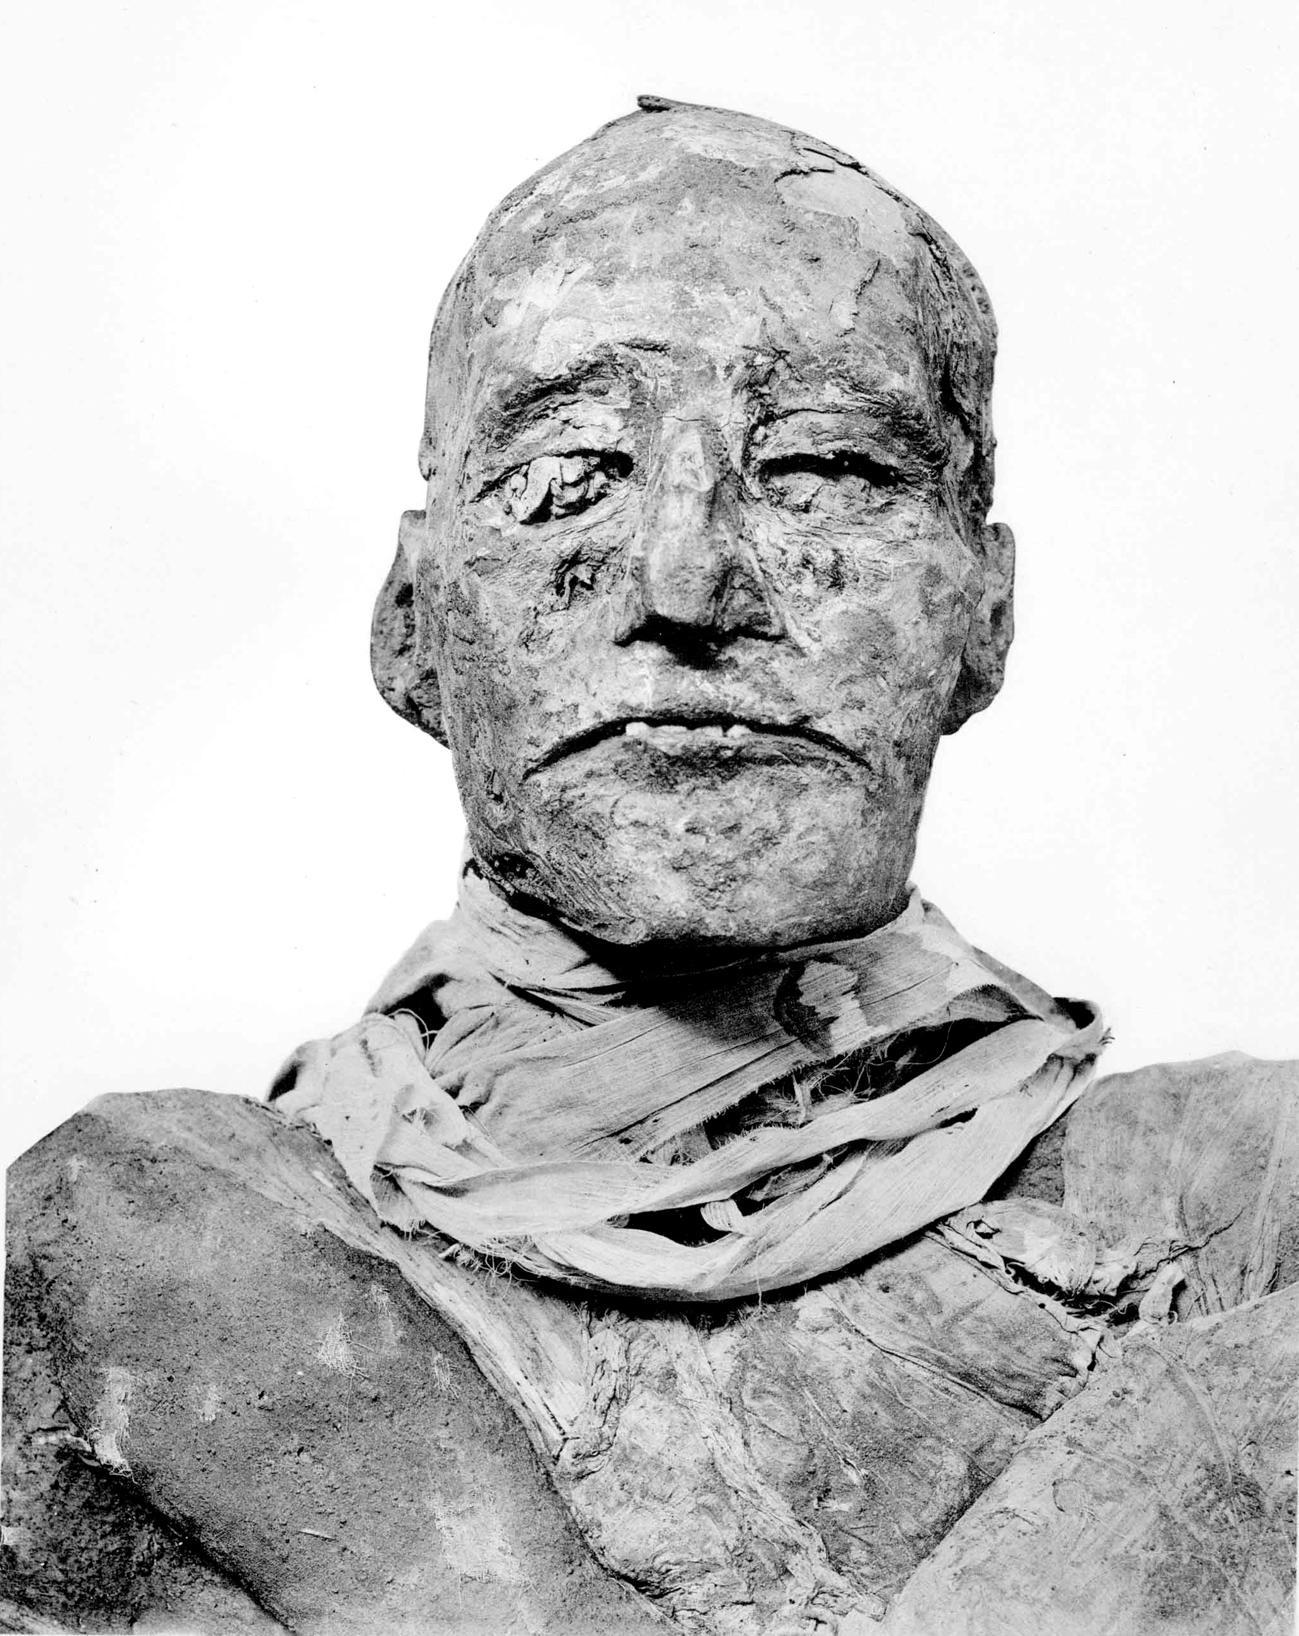 La momie de Ramsès III. Le&nbsp;règne de ce pharaon&nbsp;a duré plus de 31 ans. Il n'a cessé de lutter contre la corruption qui gangrenait son pays.&nbsp;© Zahi Hawass et al. 2012, British Medical Journal